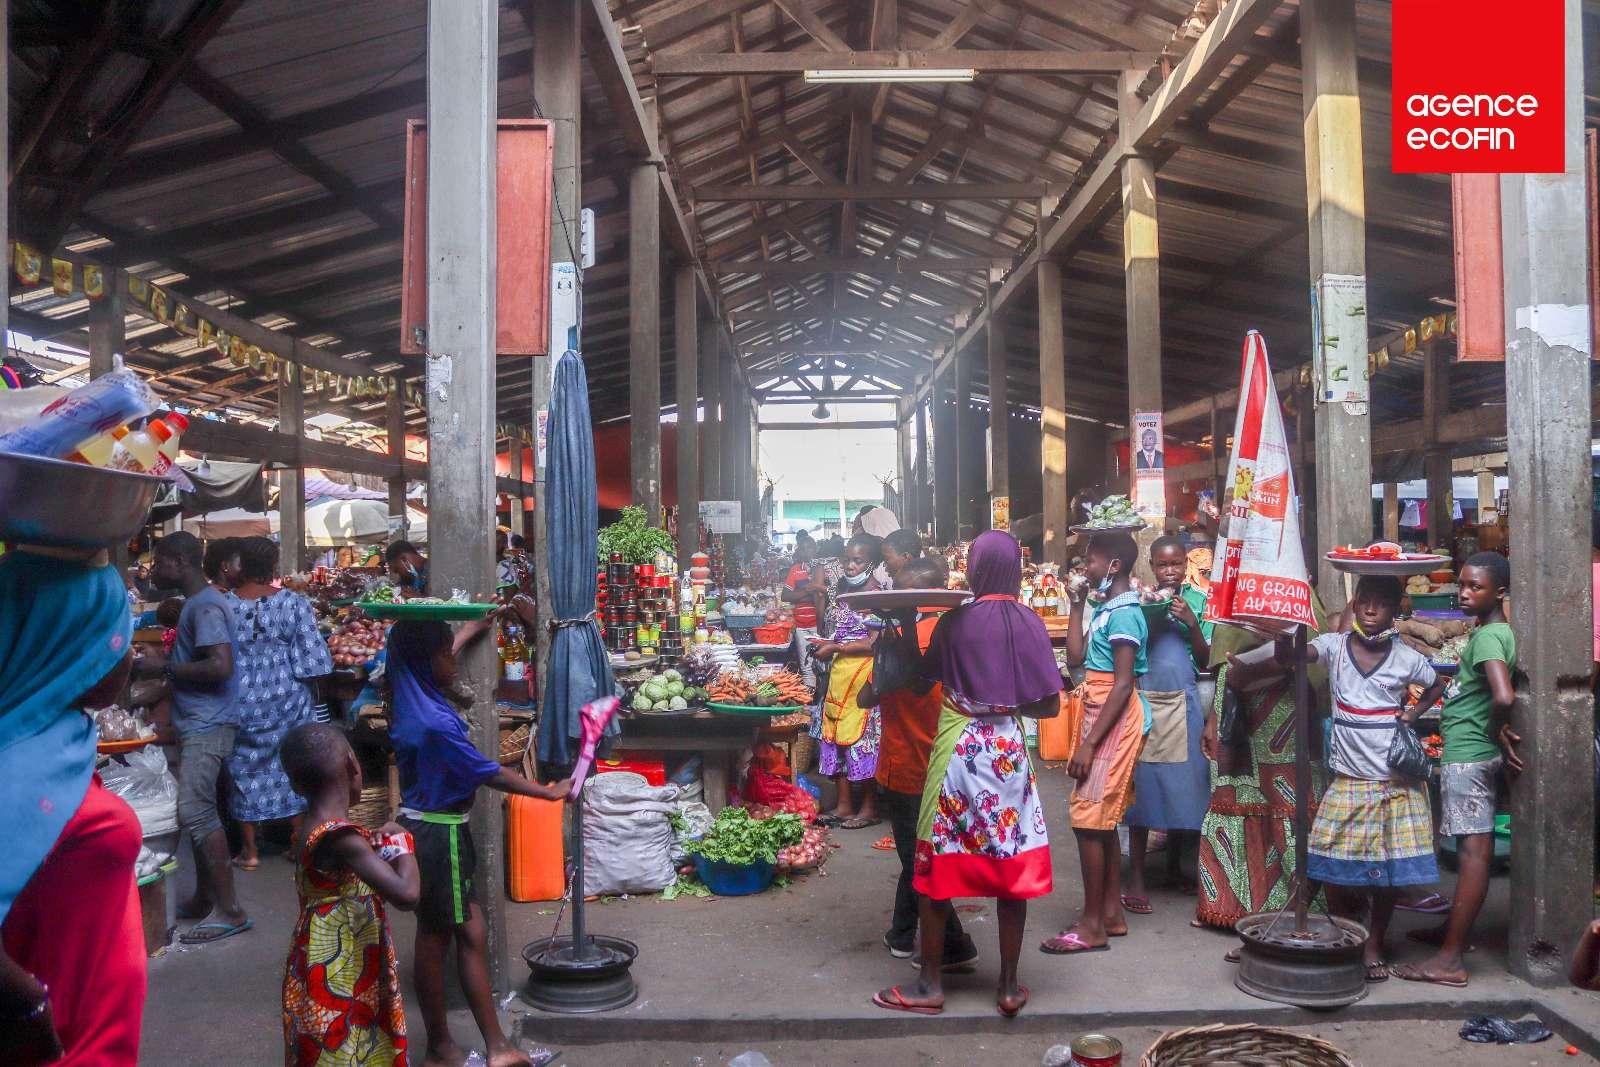 Le marché de Nukafu